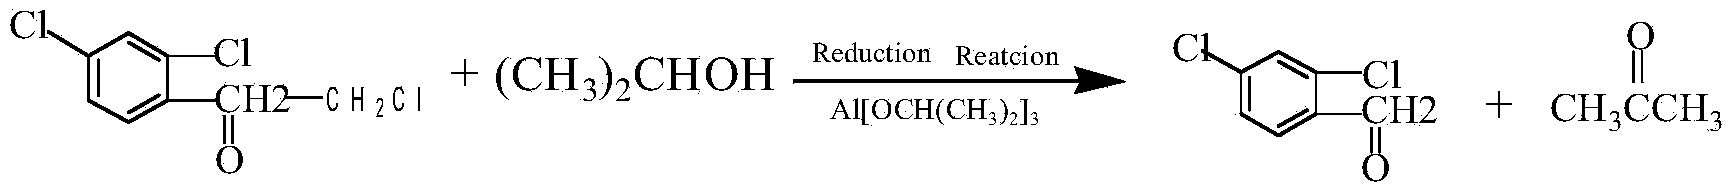 Clean preparation method for 2,4-dichloro-alpha-chloromethyl benzyl alcohol